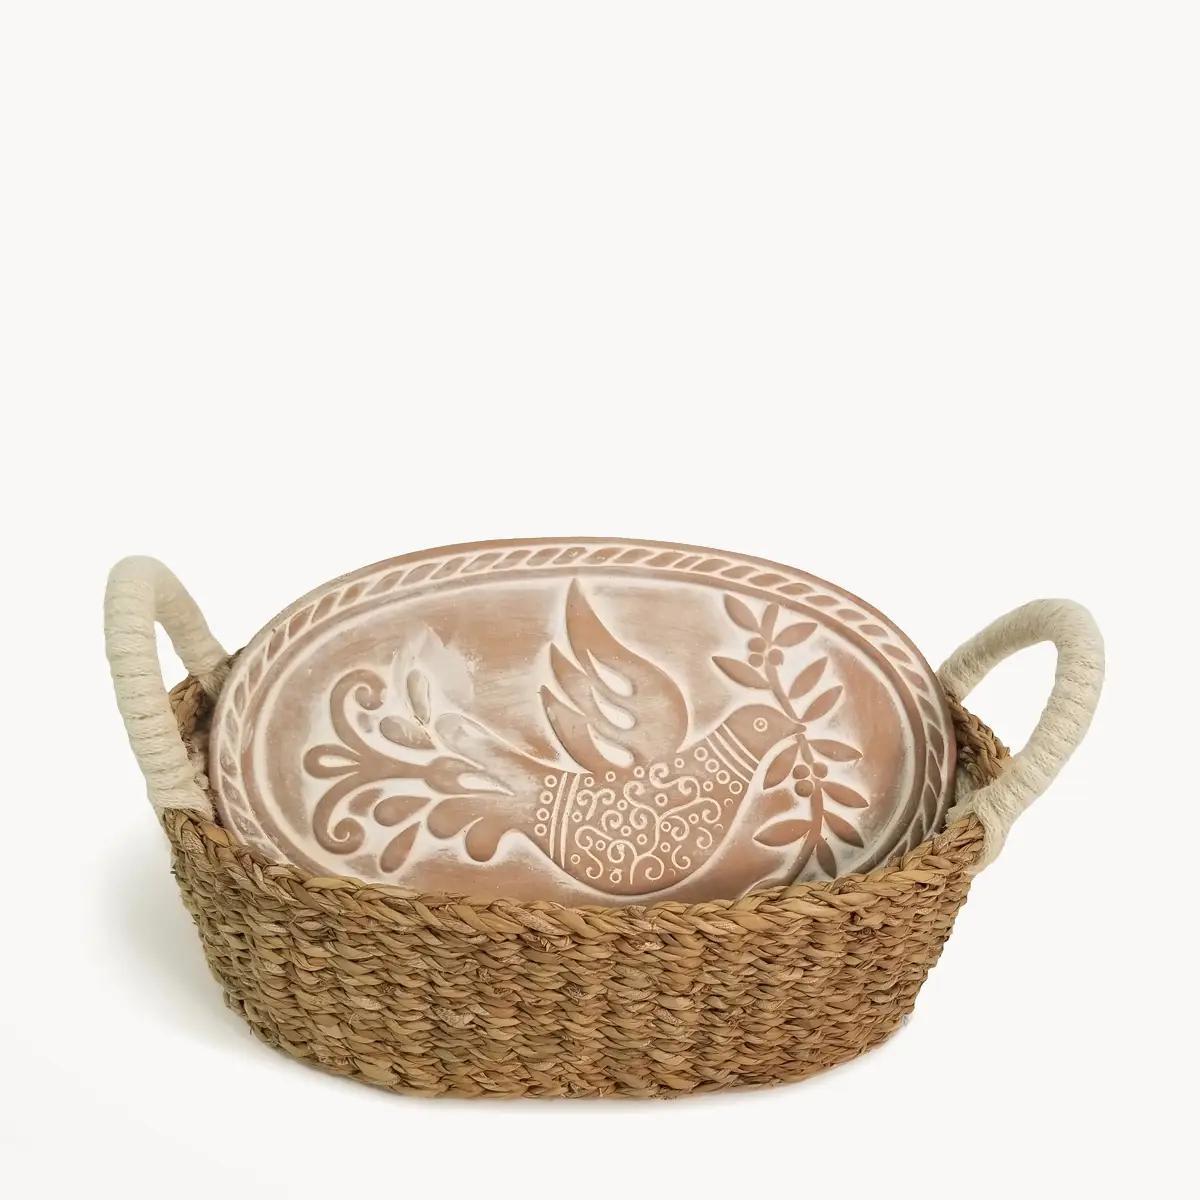 Handmade Bread Warmer & Wicker Basket | Oval